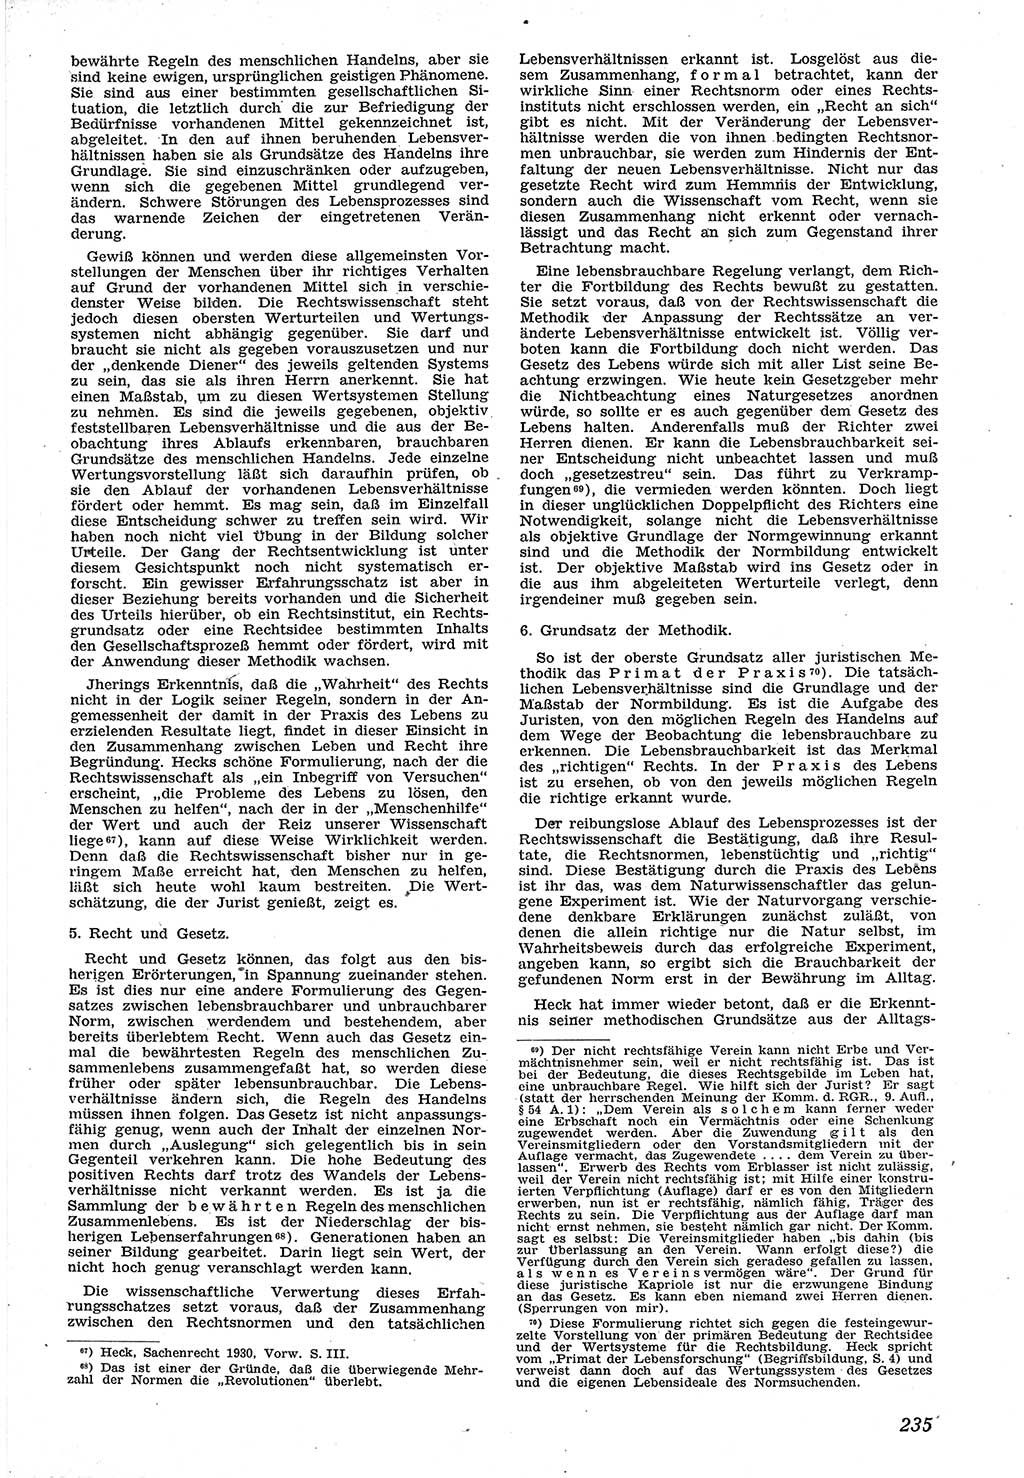 Neue Justiz (NJ), Zeitschrift für Recht und Rechtswissenschaft [Sowjetische Besatzungszone (SBZ) Deutschland], 1. Jahrgang 1947, Seite 235 (NJ SBZ Dtl. 1947, S. 235)